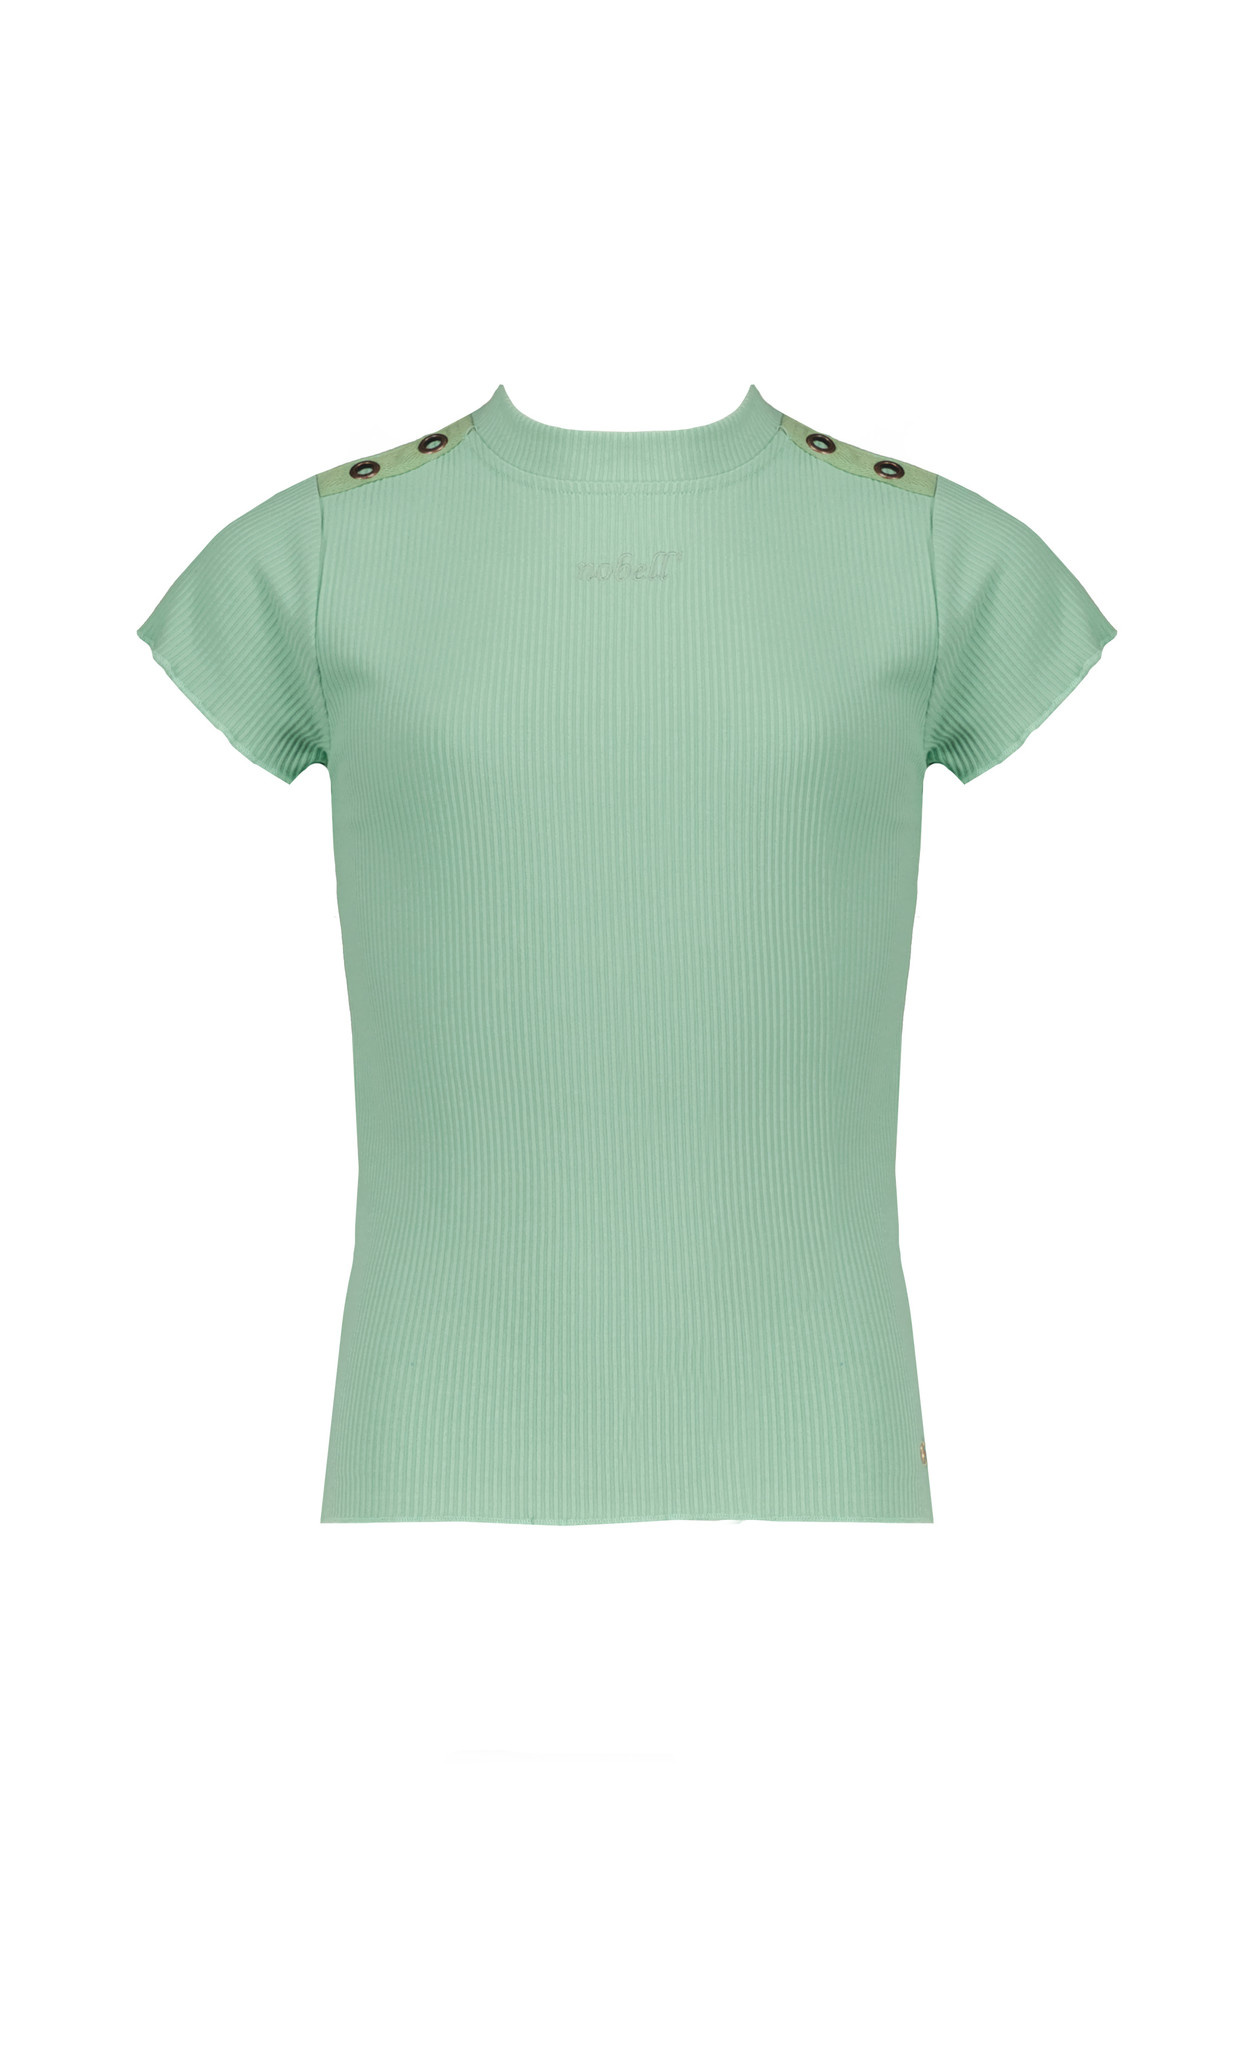 NoBell meiden t-shirt Kima Jersey Rib Light Smaragd